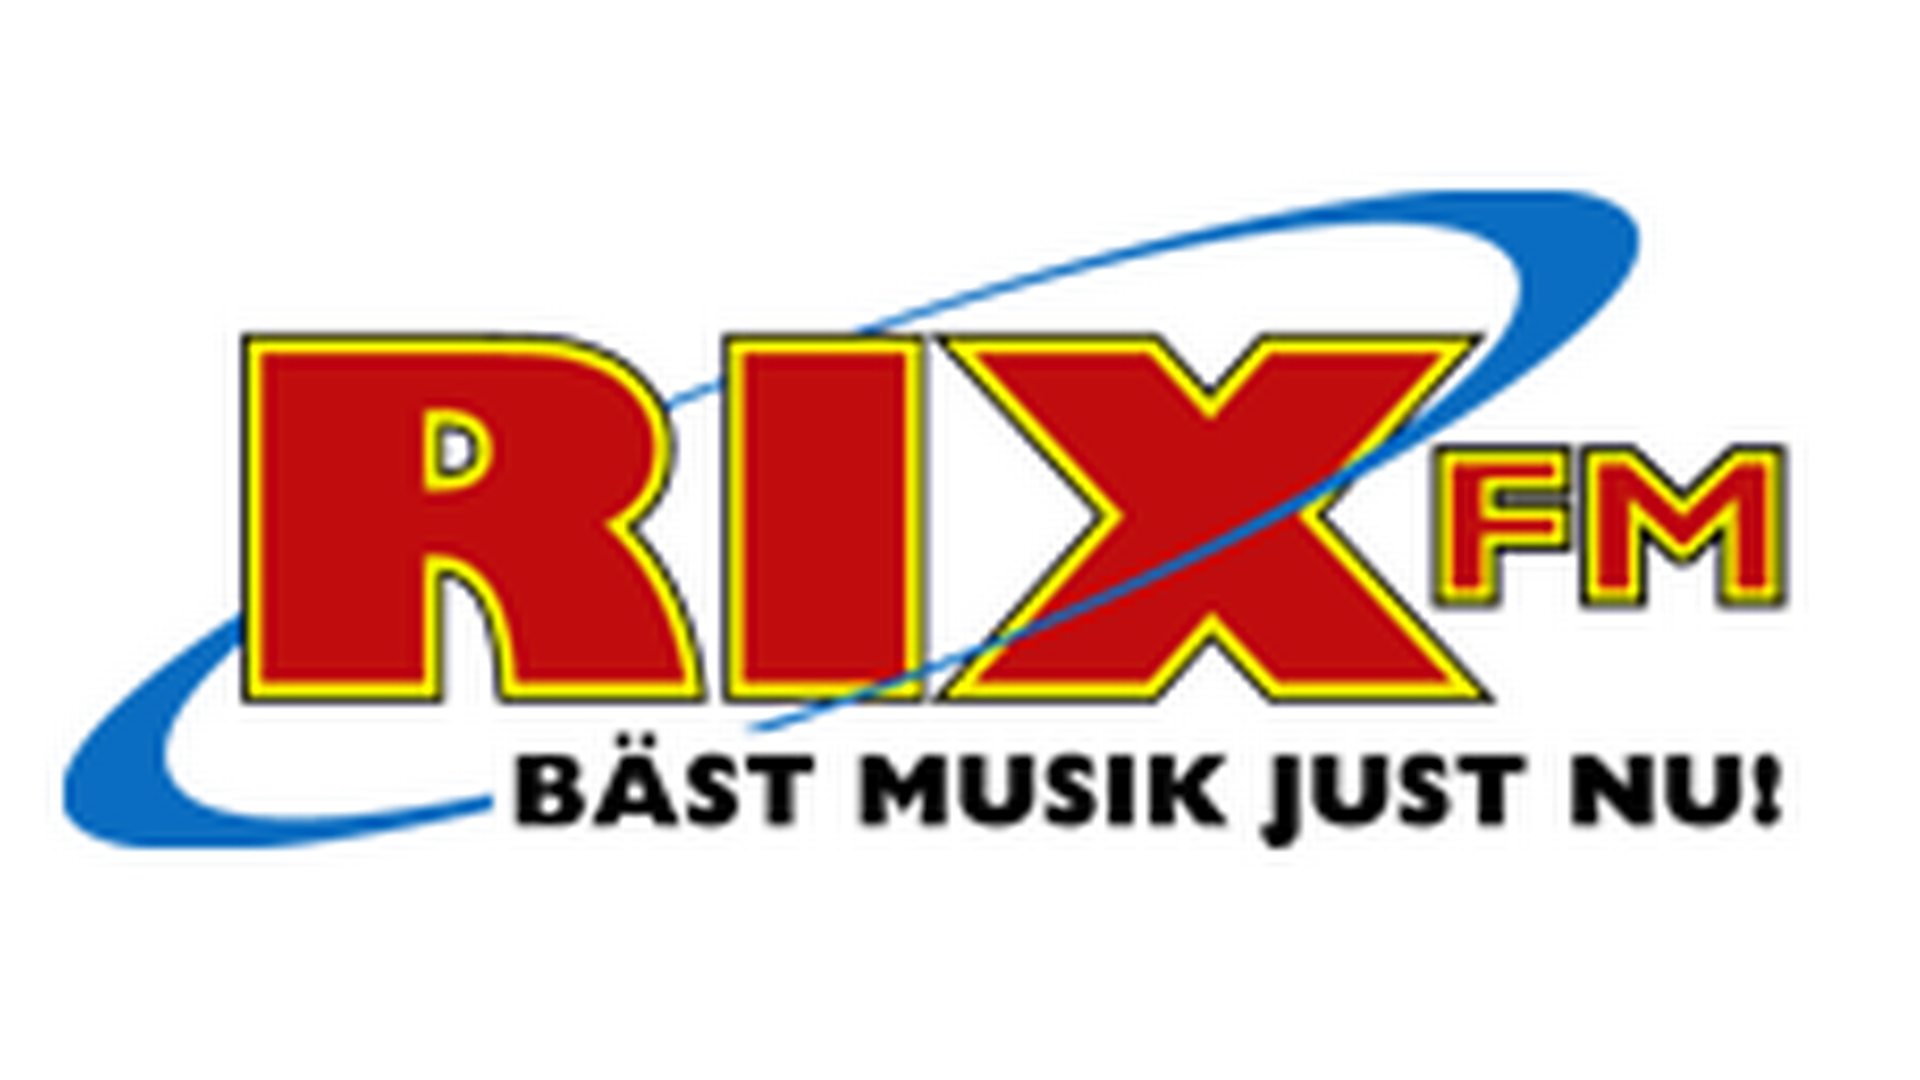 MTG's svenske hovedbrand er RIX FM